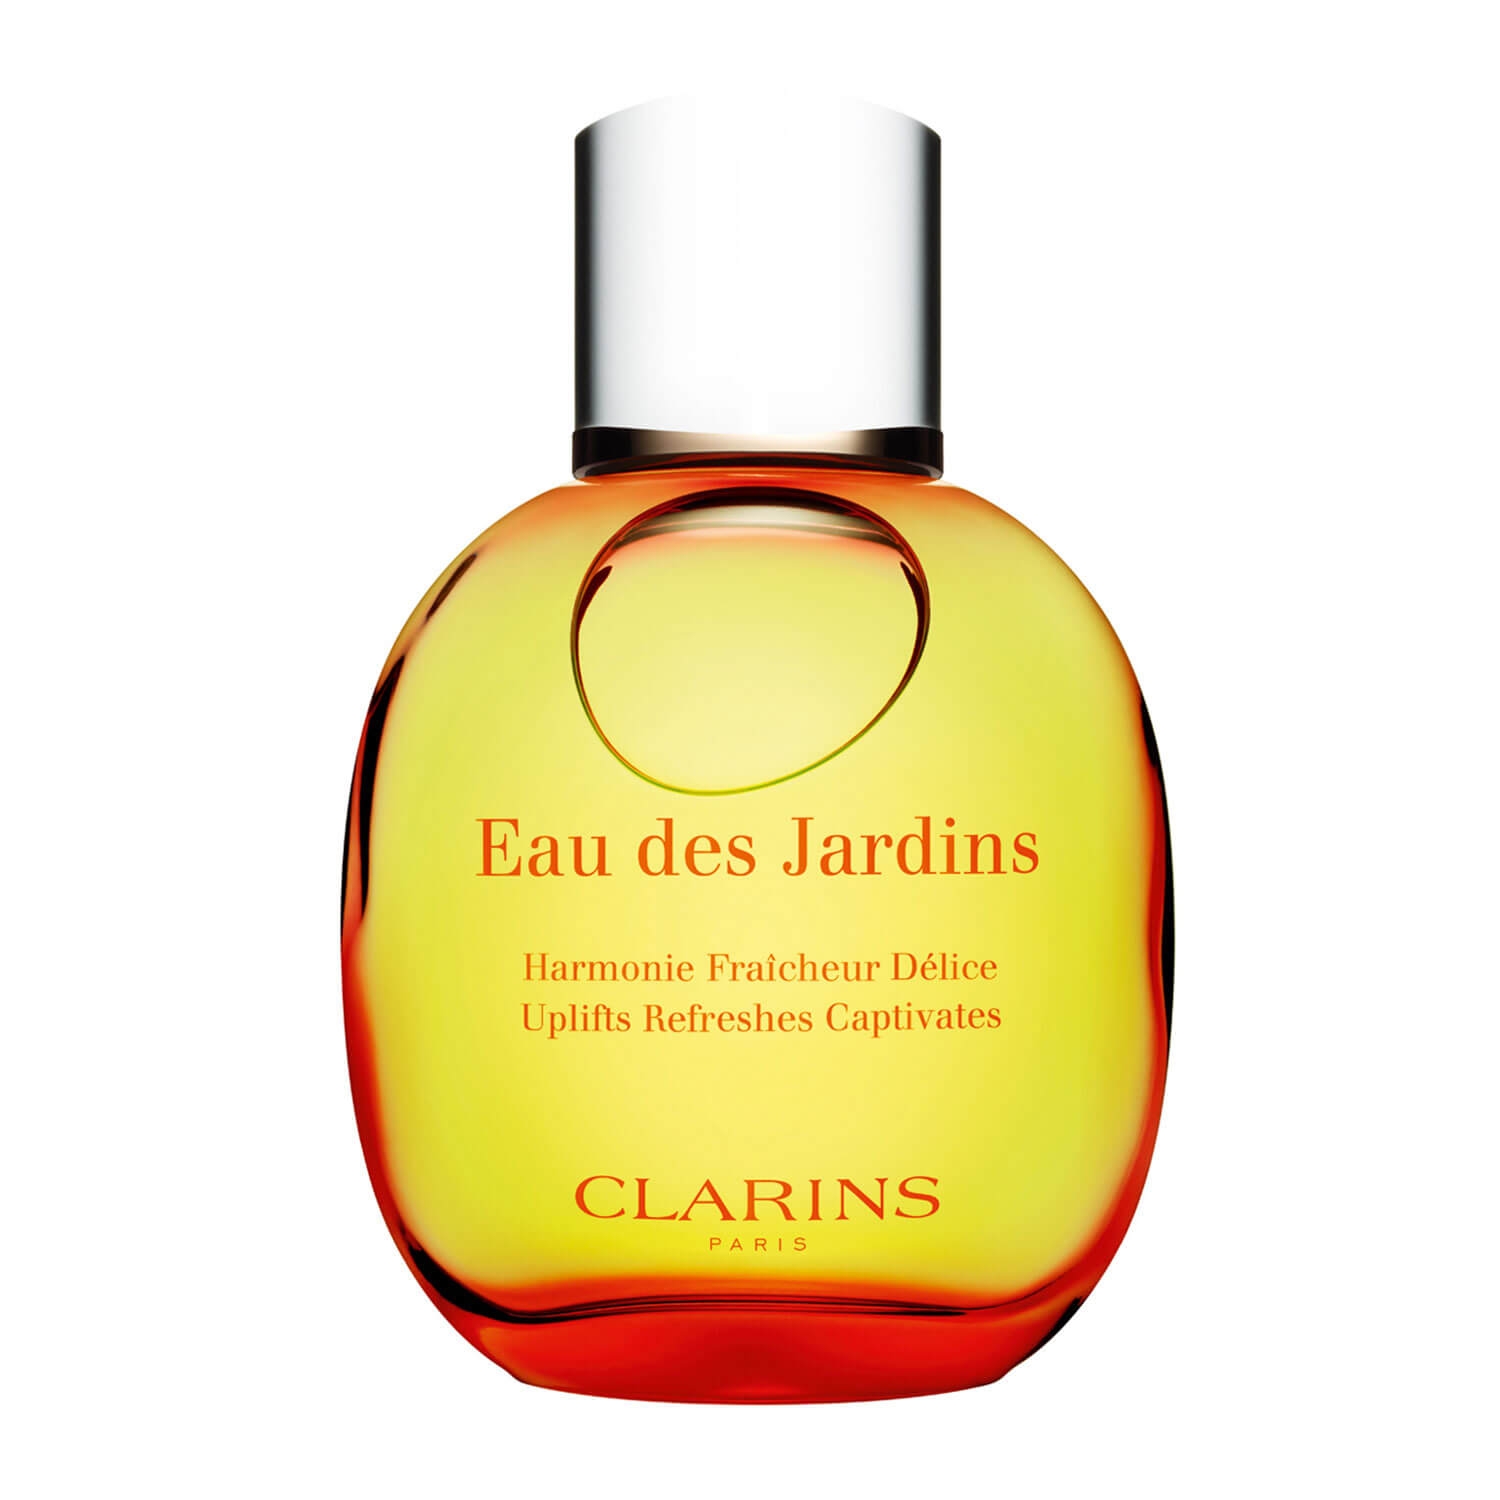 Produktbild von Clarins Scent - Eau des Jardins